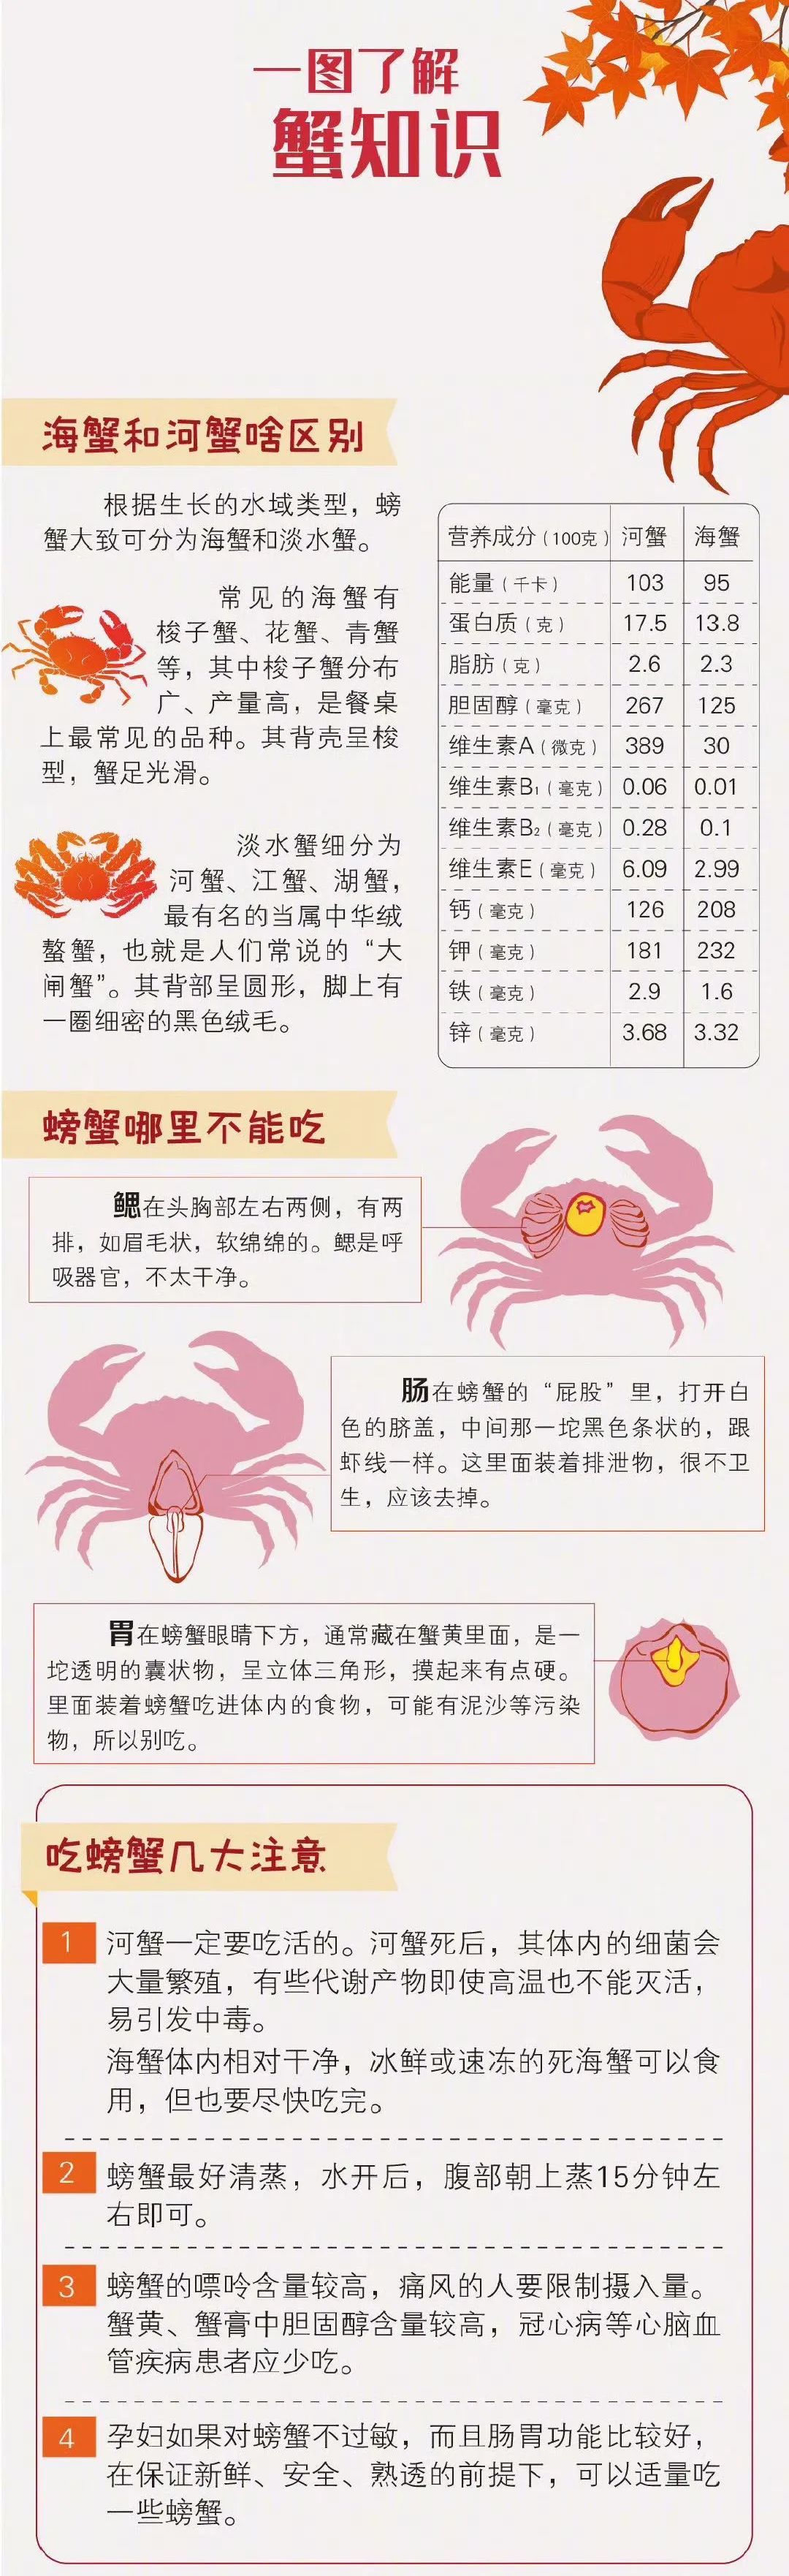 海蟹和河蟹有何区别螃蟹哪些部位不能吃一张长图为你总结